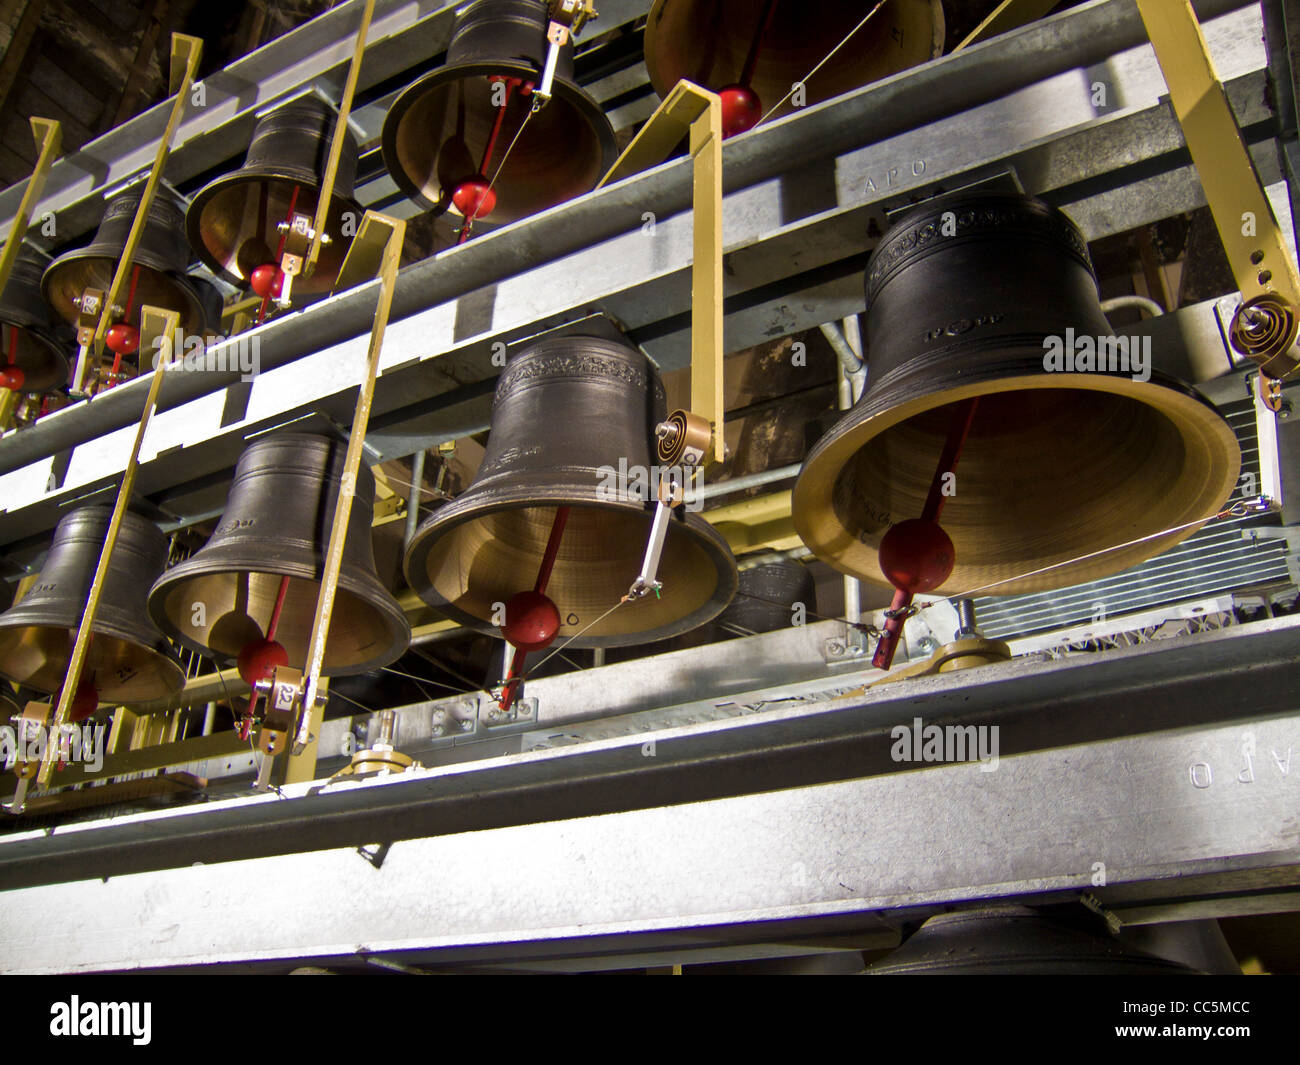 Carillon, 35 campanas interpretadas por una persona usando el teclado klavier en York Minster, Reino Unido Foto de stock